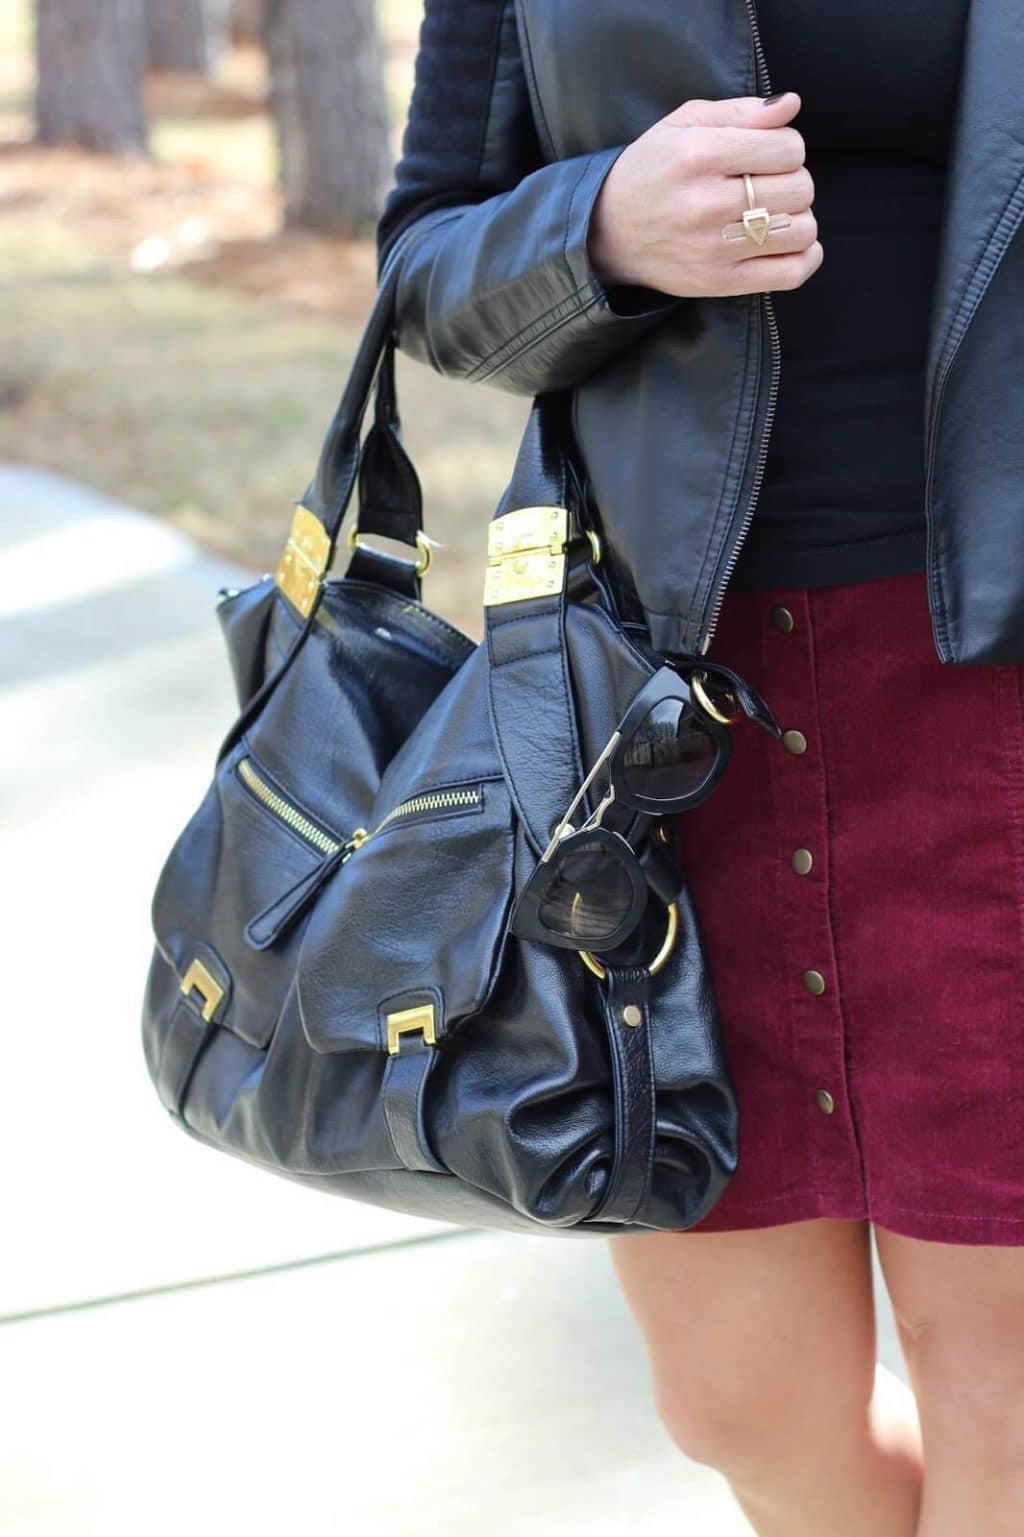 Black and Gold Hobo bag, corduroy skirt, prada sunglasses